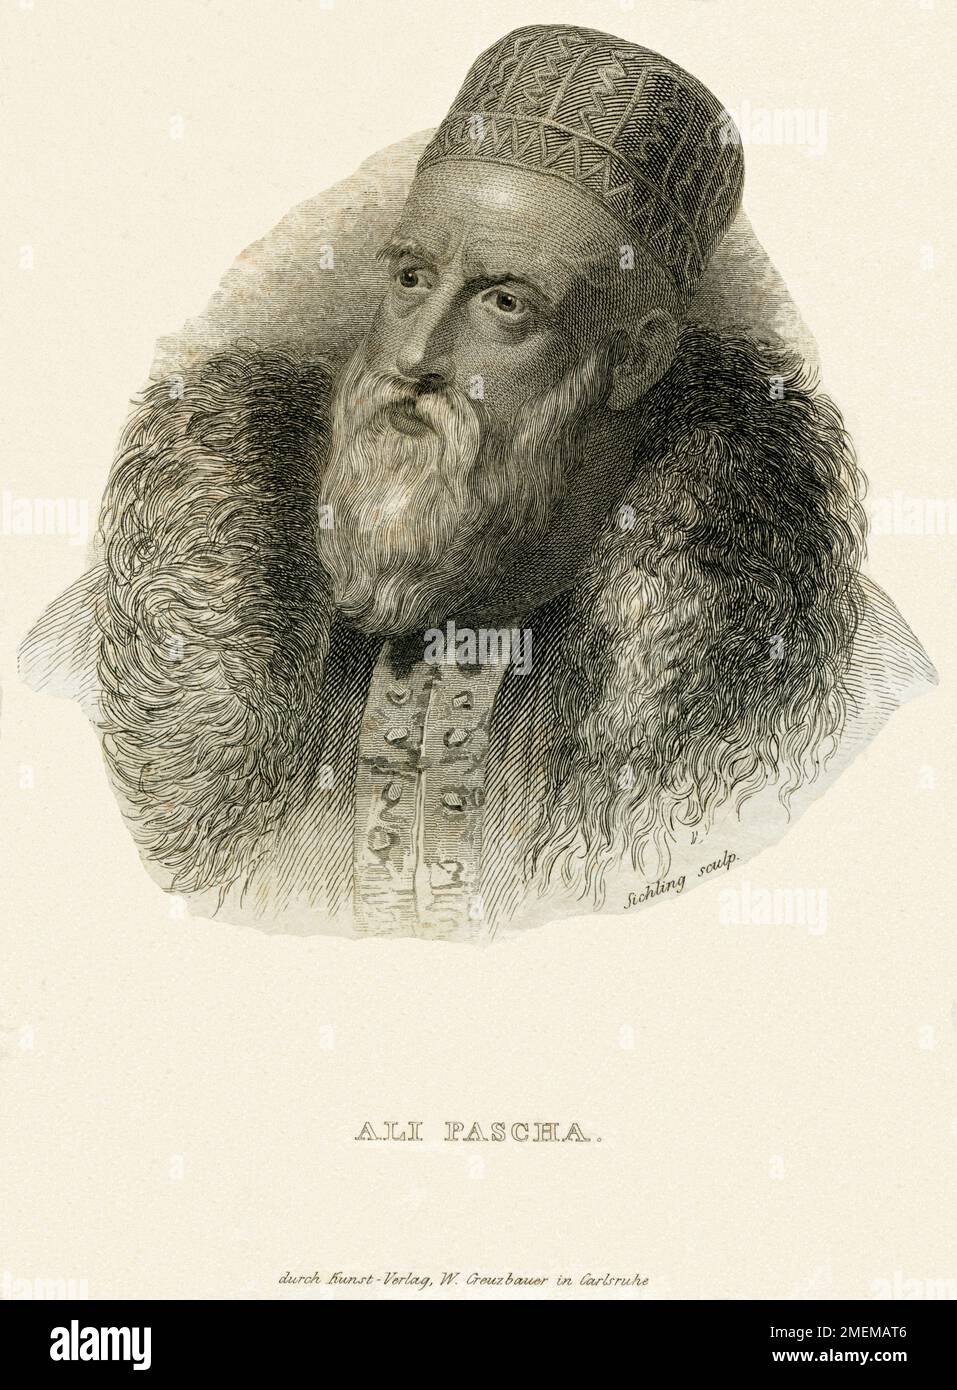 Europa, Albanien, Tepelena, Ali Pascha , auch Ali Pashé Tepelena oder Ali Pascha von Janina ) , geboren um 1741 in der Region um Tepelena ( Südalbanien ), gestorben 1822 auf der Ioannina Insel, in einer Zelle des Pandeleimon Klosters ( ermordet ) in Griechenland. Stahlstich von Sichling , herausgegeben bei W. Creuzbauer in Carlsruhe , um 1840 / Europa, Albanien, Tepelena, Ali Pasha von Tepelena ( der Löwe von Yannina ) , 1740 - 1822 , ein muslimischer albanischer Herrscher , Stahlgravierung um 1840 , von Sichling, veröffentlicht von Creuzbauer / Carlsruhe. Stockfoto